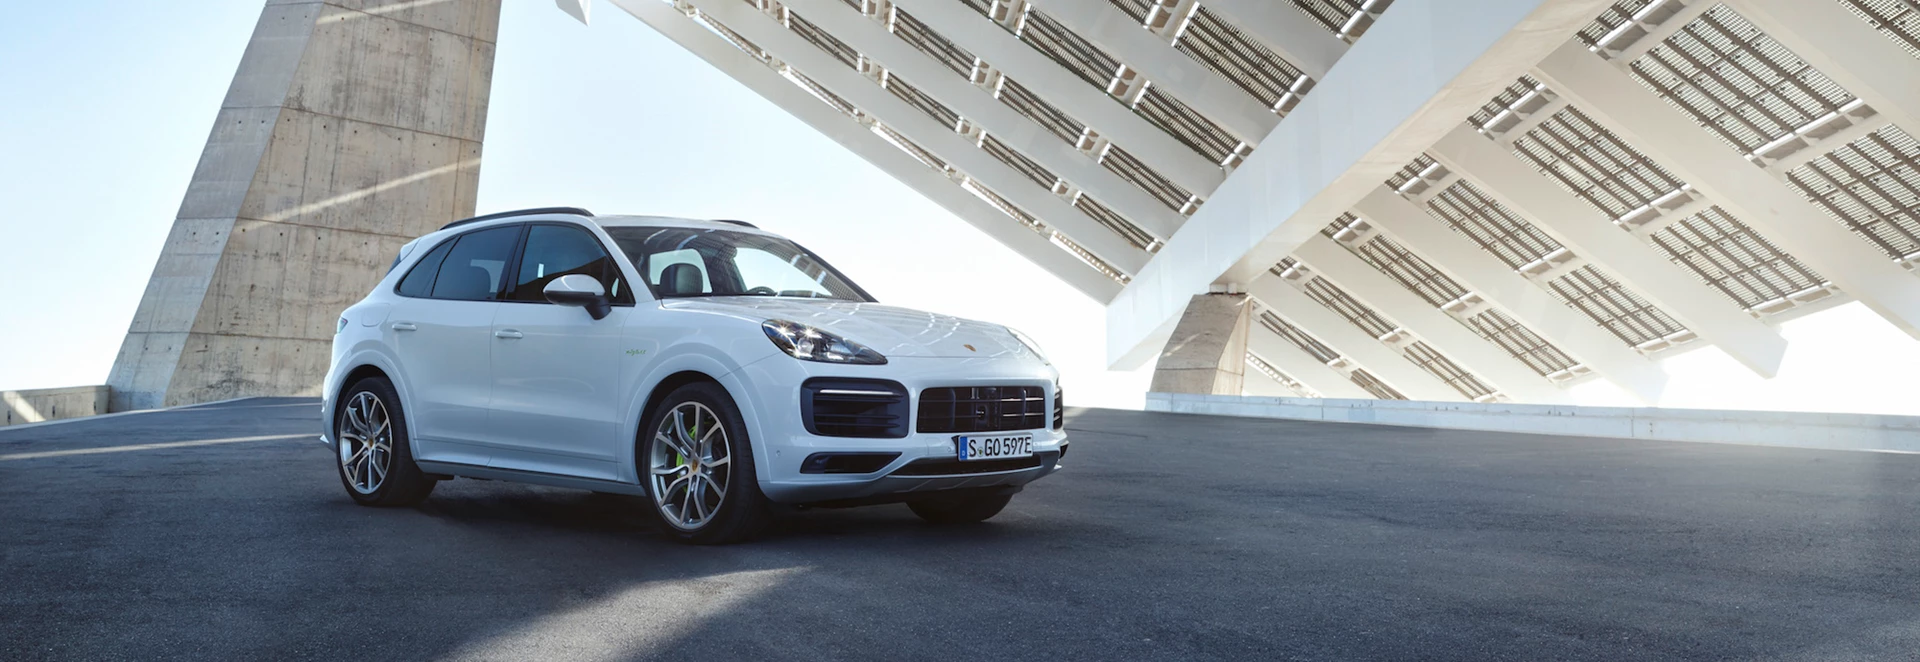 Porsche introduces plug-in hybrid to Cayenne range